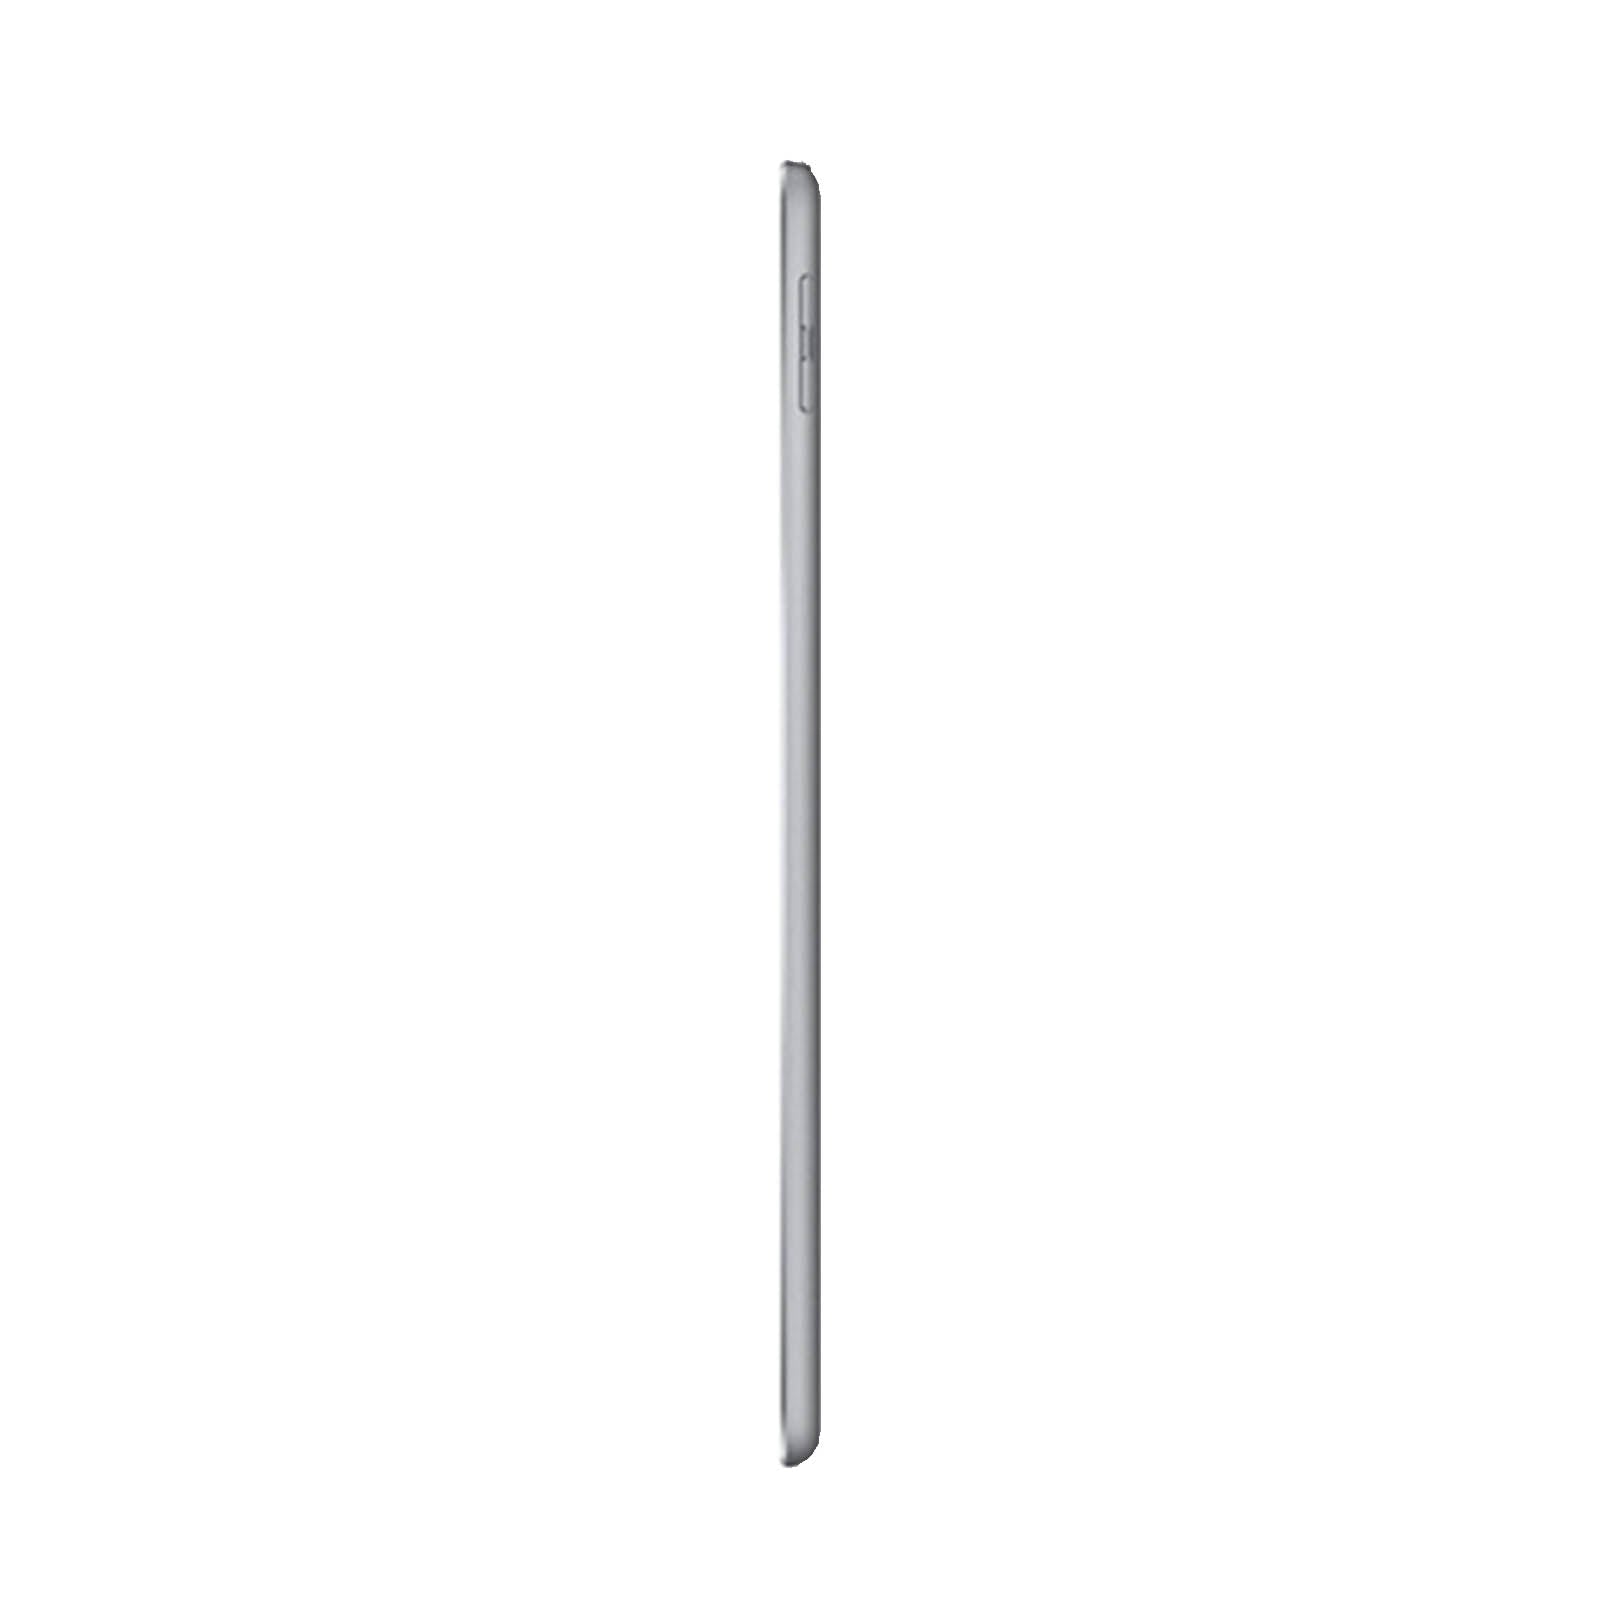 Apple iPad 5 32GB WiFi & Cellulare Grigio Siderale Buono